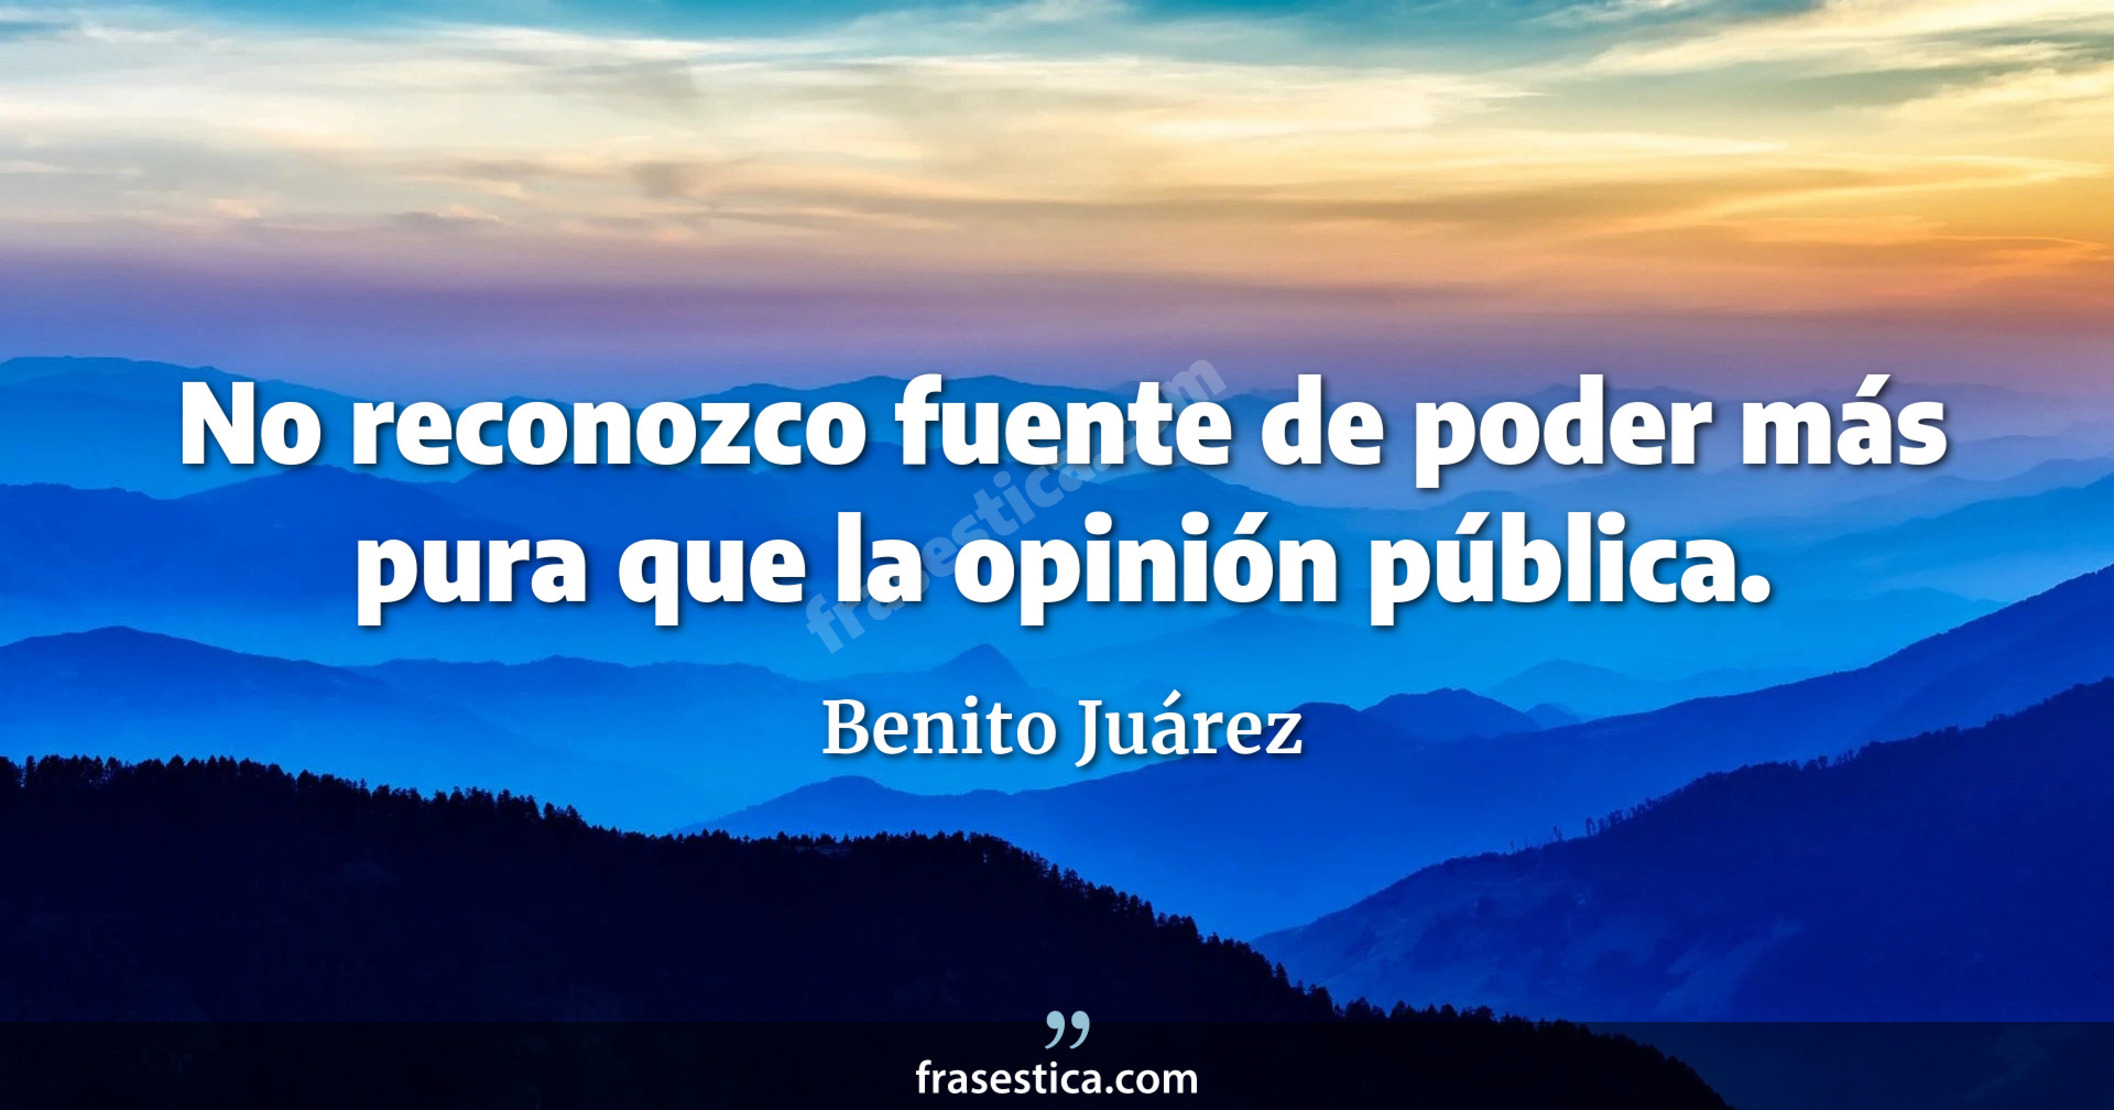 No reconozco fuente de poder más pura que la opinión pública. - Benito Juárez